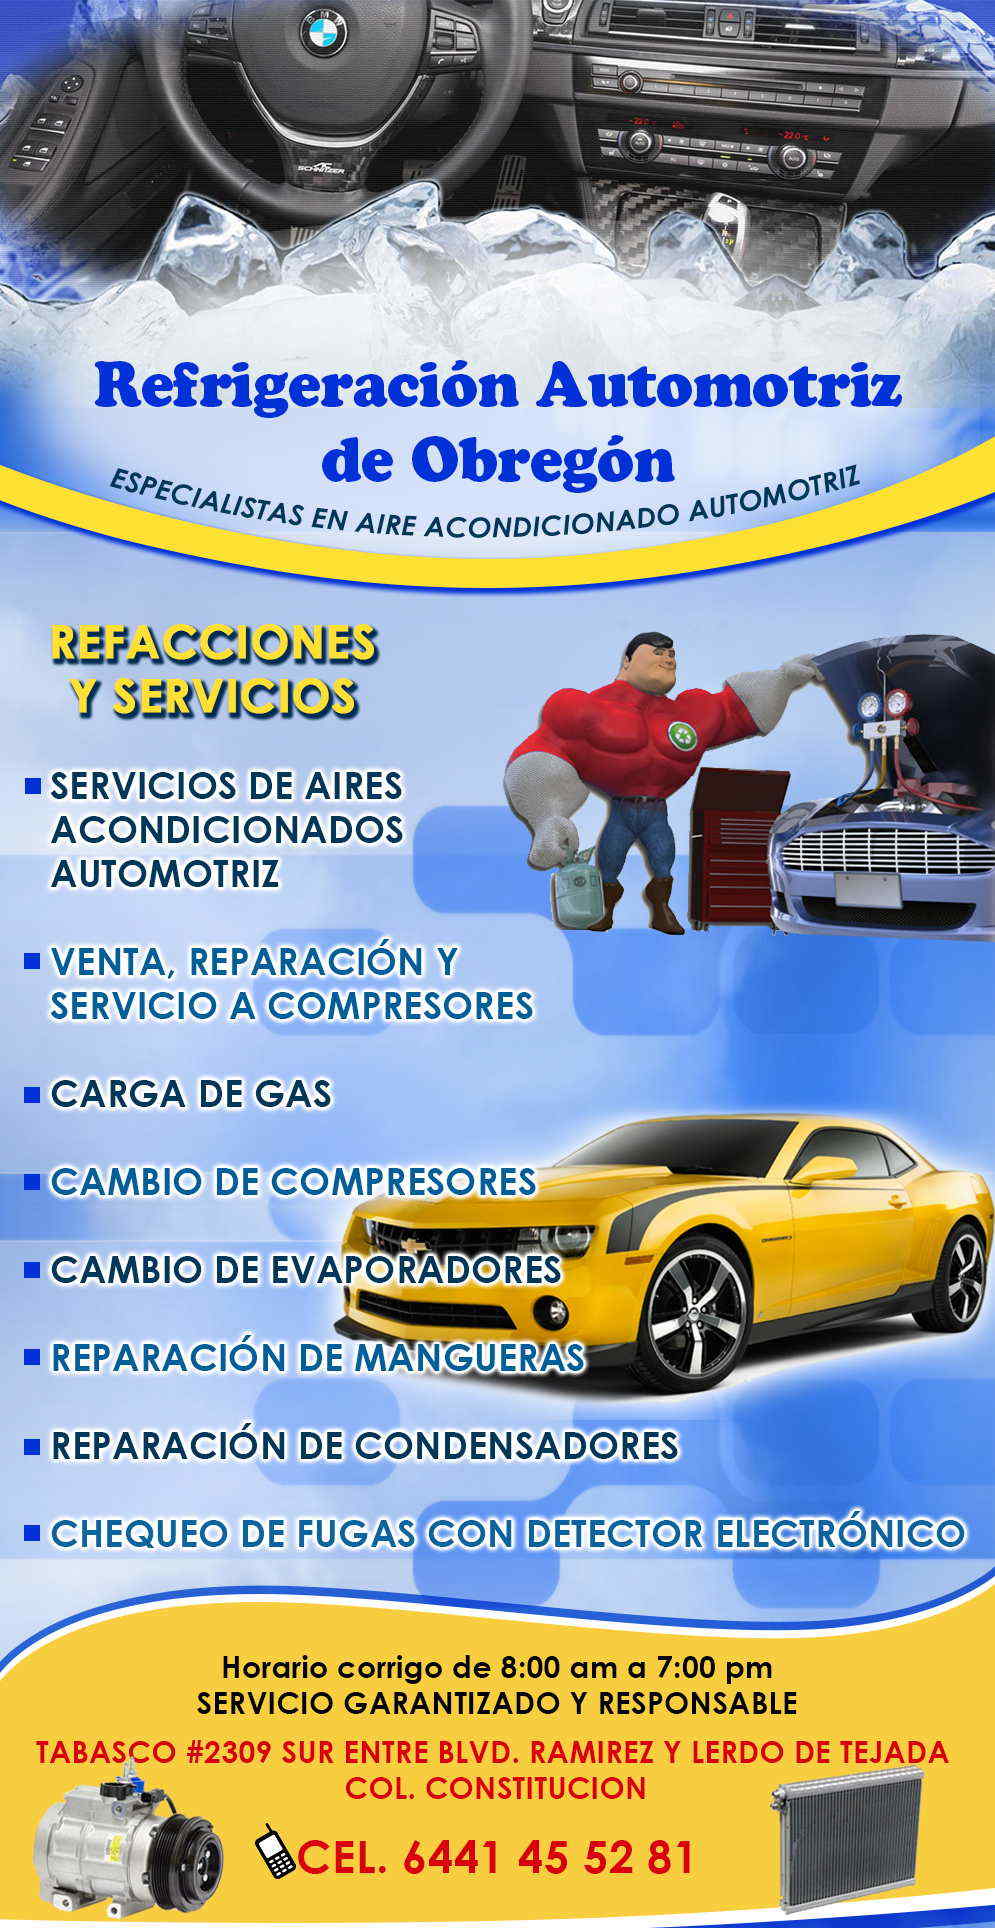 REFRIGERACION AUTOMOTRIZ DE OBREGON-REFACCIONES Y SERVICIO DE AIRE ACONDICIONADO AUTOMOTRIZ. VENTA, REPARACION Y SERVICIO A COMPRESORES.    